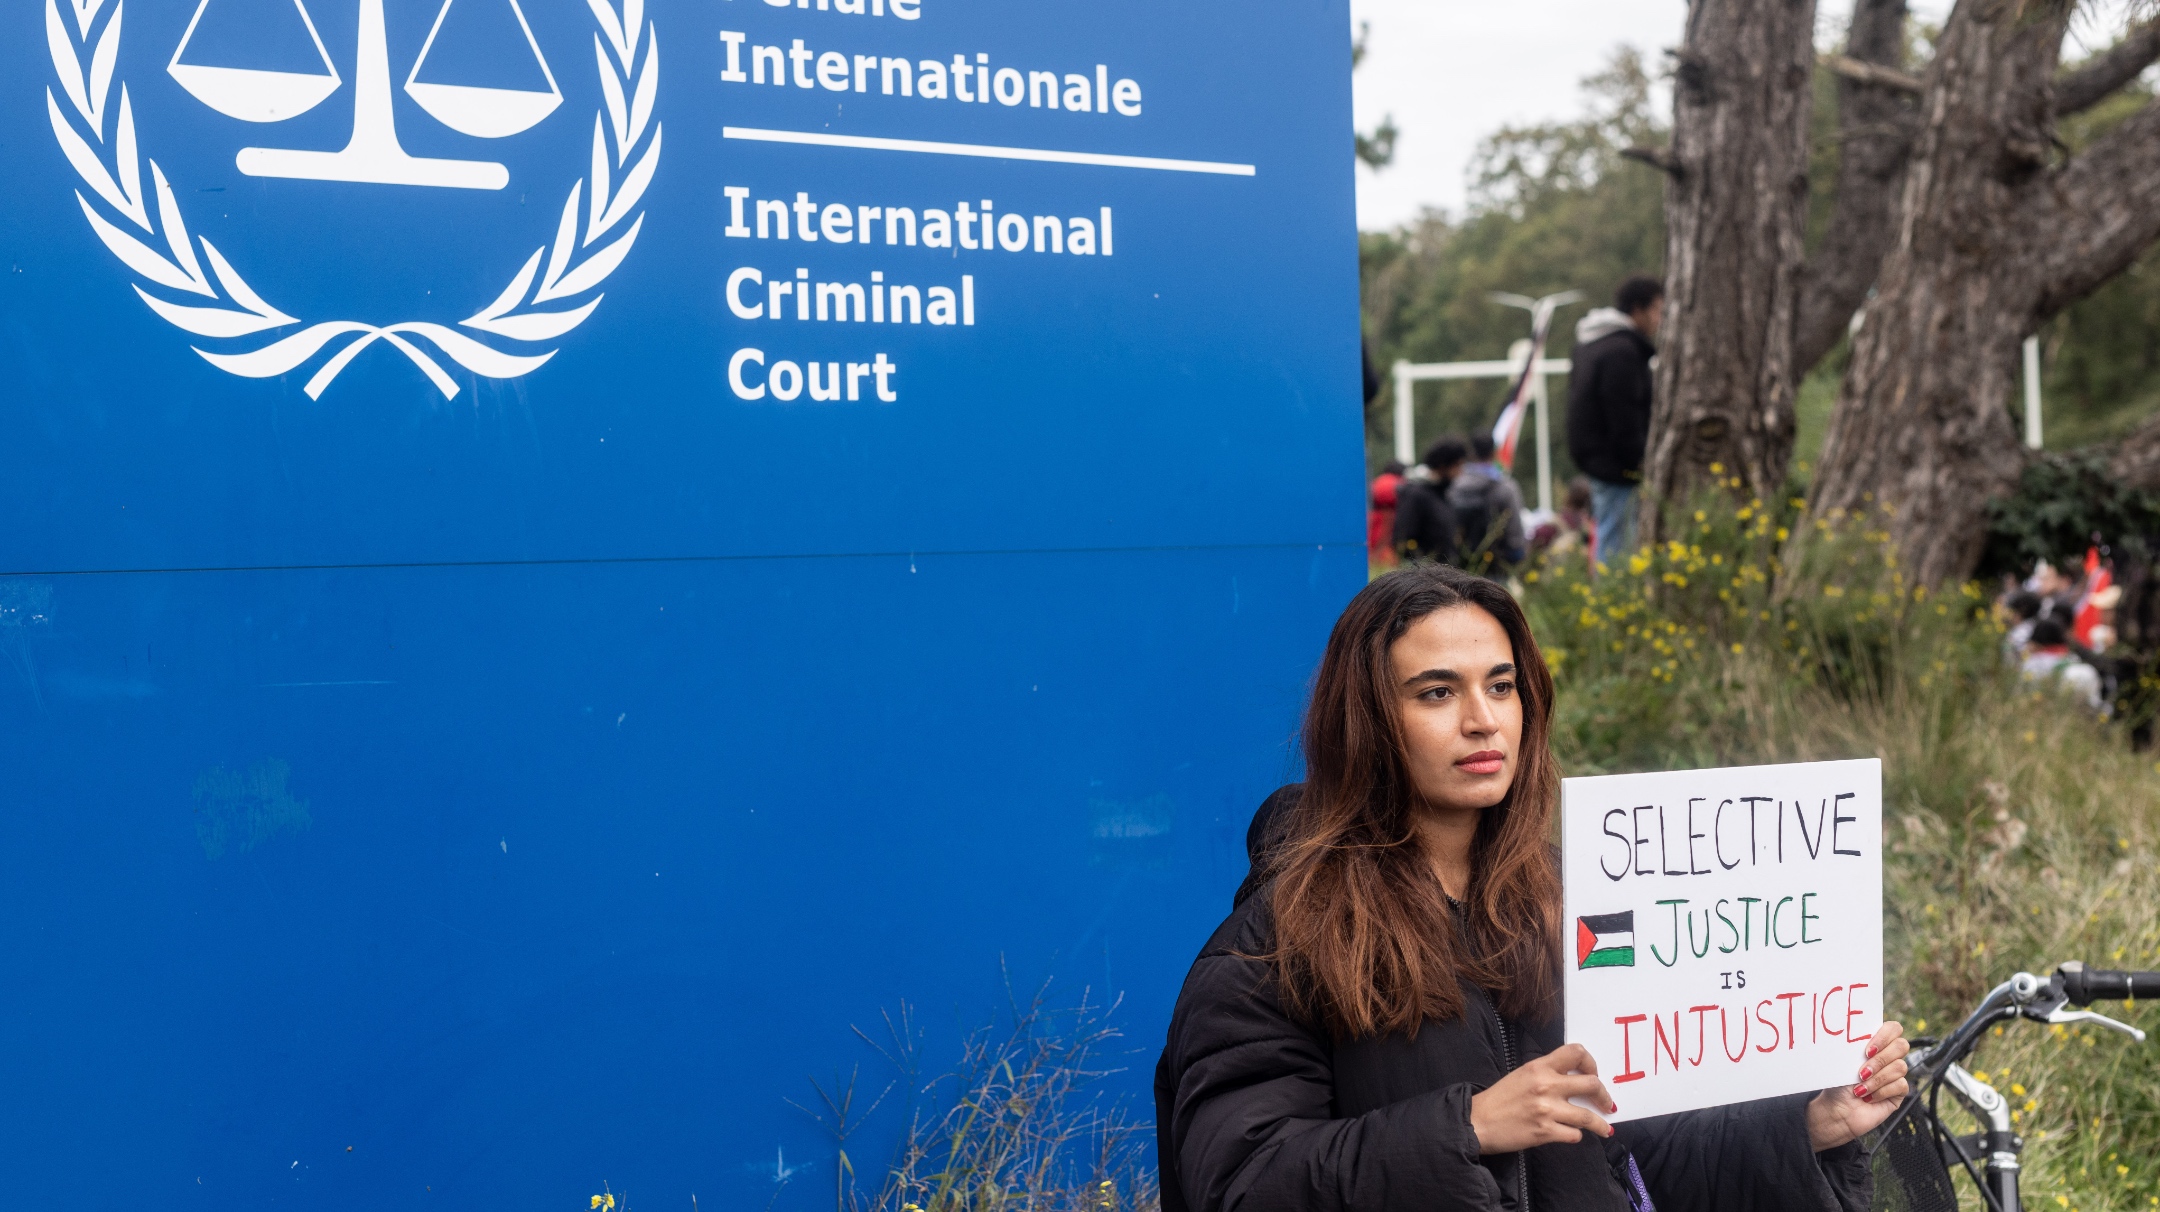 ישראל עומדת בפני אישומים ברצח עם בבית הדין הבינלאומי.  הנה הסיבה, וכיצד ישראל תגיב.